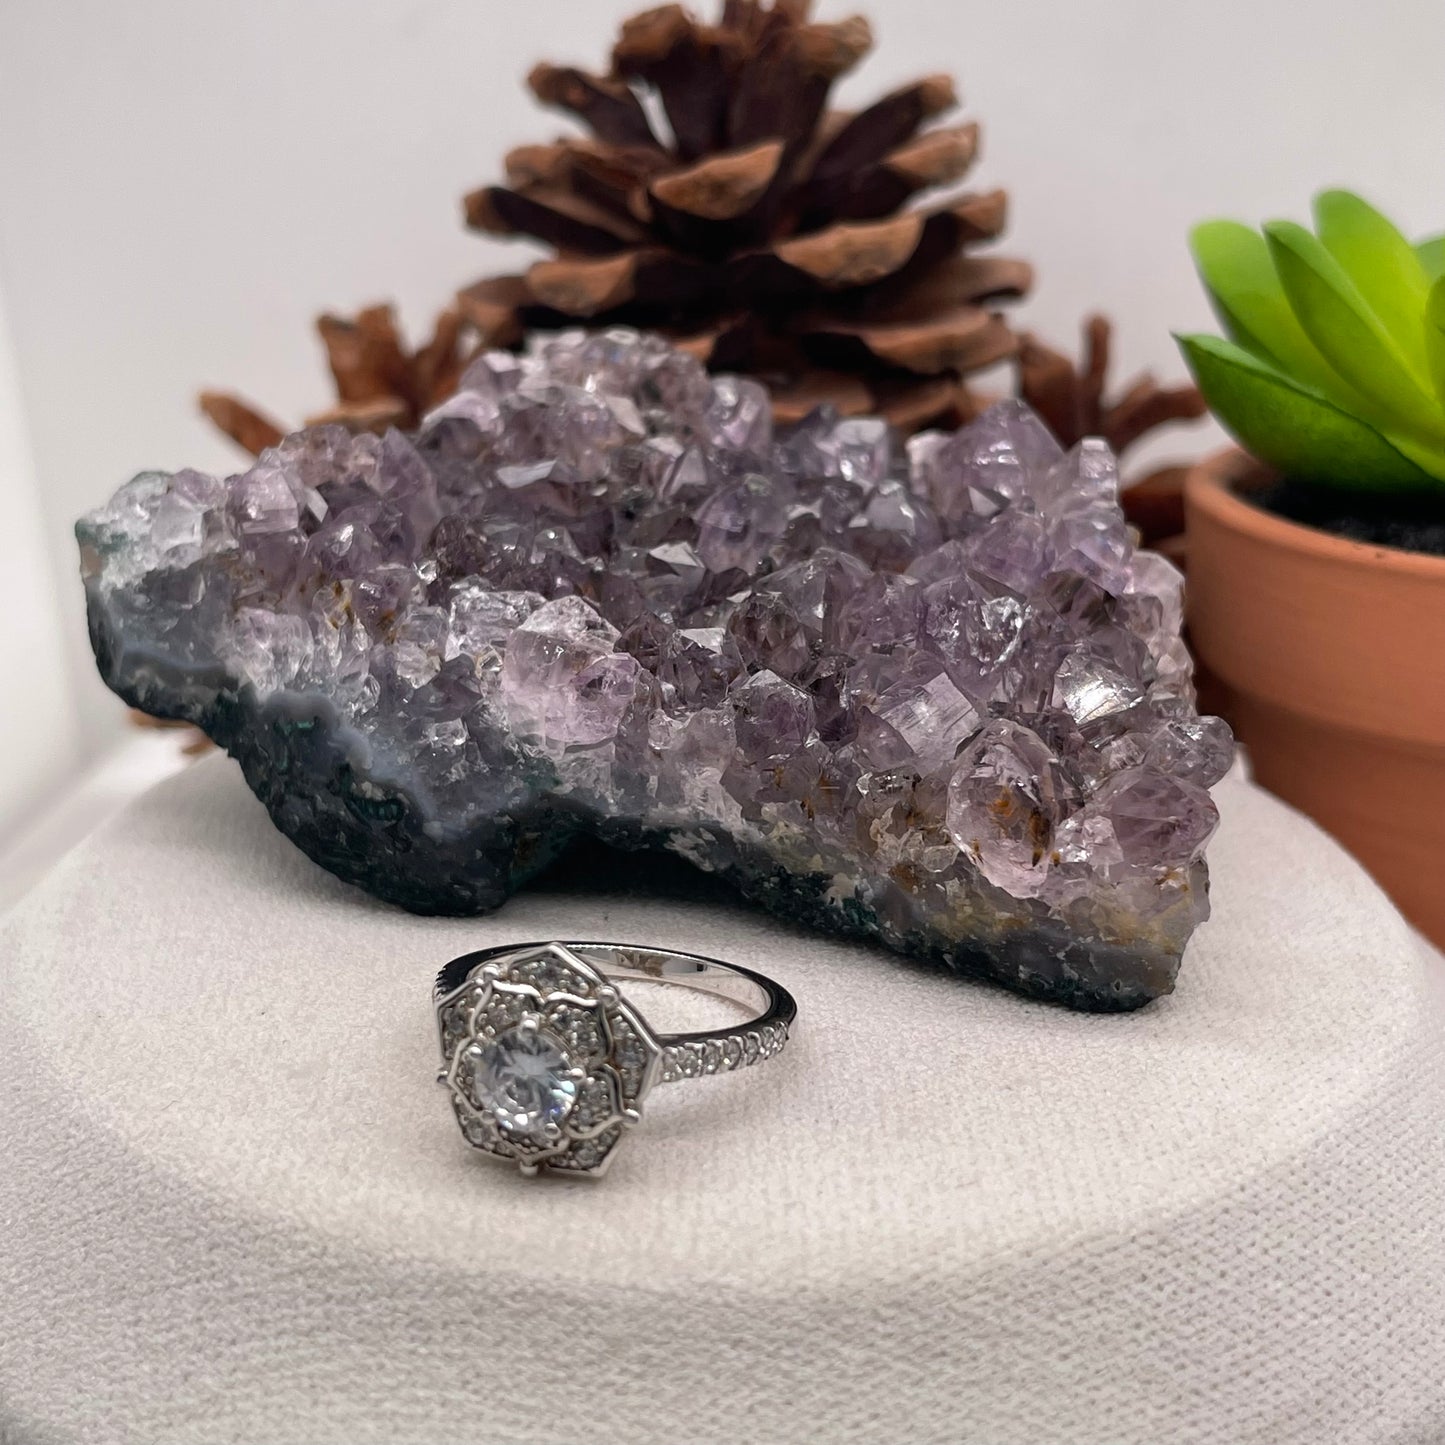 0.76 Carat Round Brilliant Lab Created / Naturel Diamond Engagement Ring